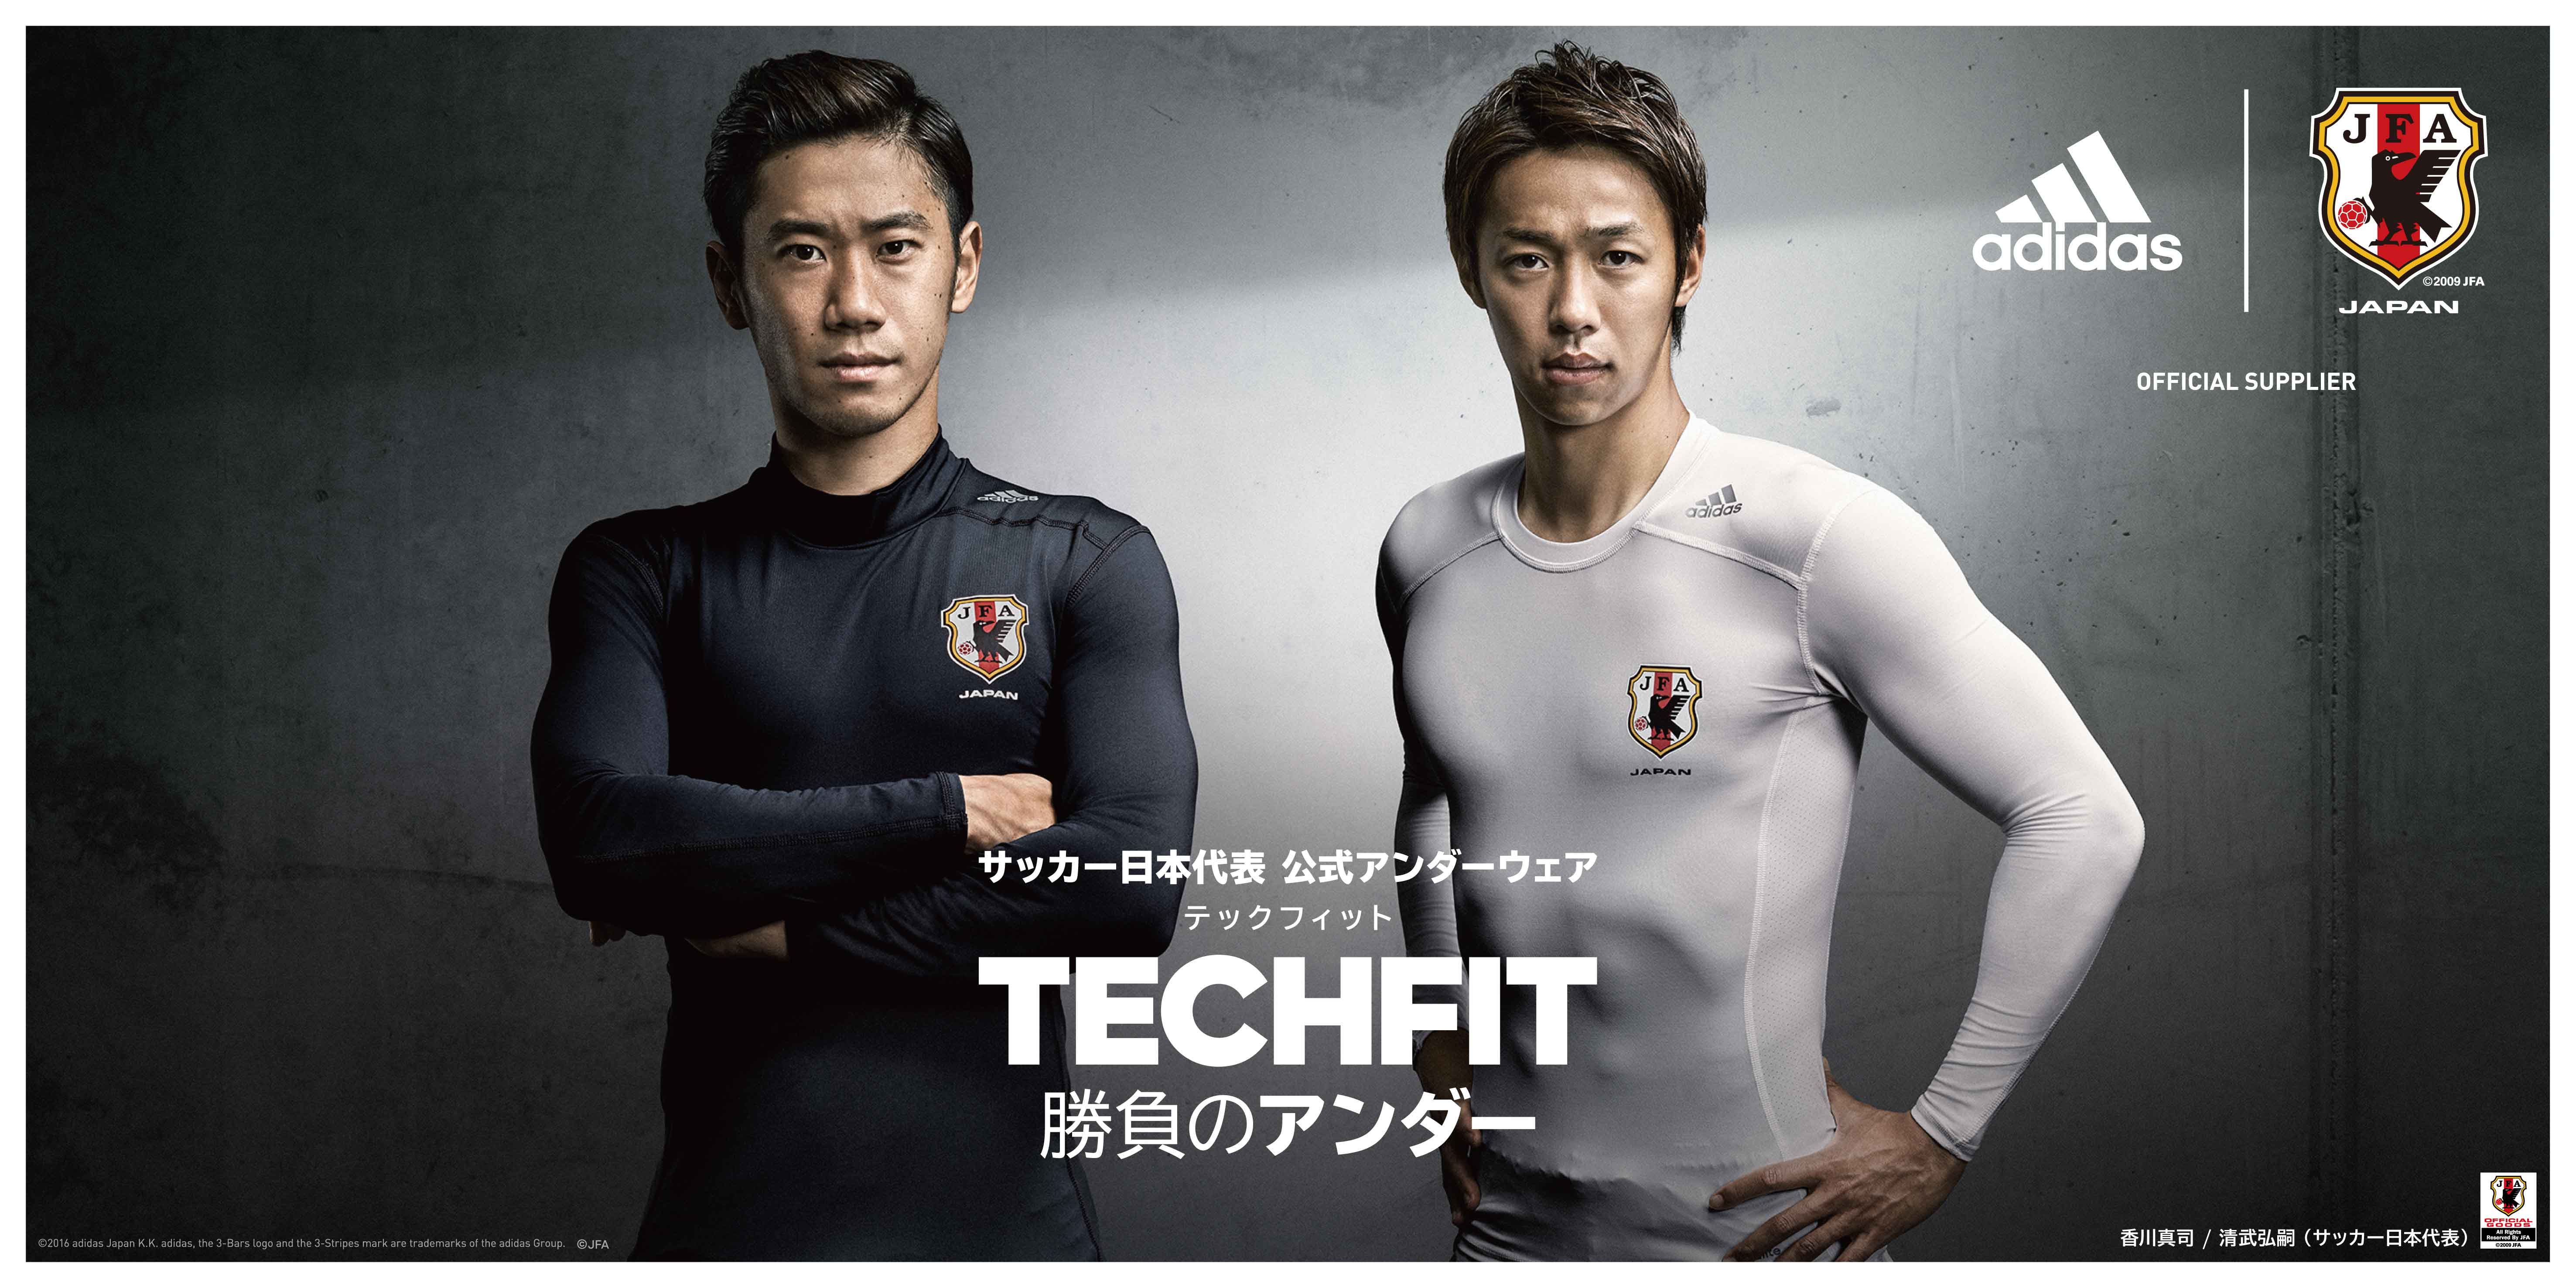 アディダスのコンプレッションウェア Techfit テックフィット サッカー 日本代表公式アンダーウェアとして採用限定モデルを16年9月1日 木 10 00より発売 アディダス ジャパン株式会社のプレスリリース